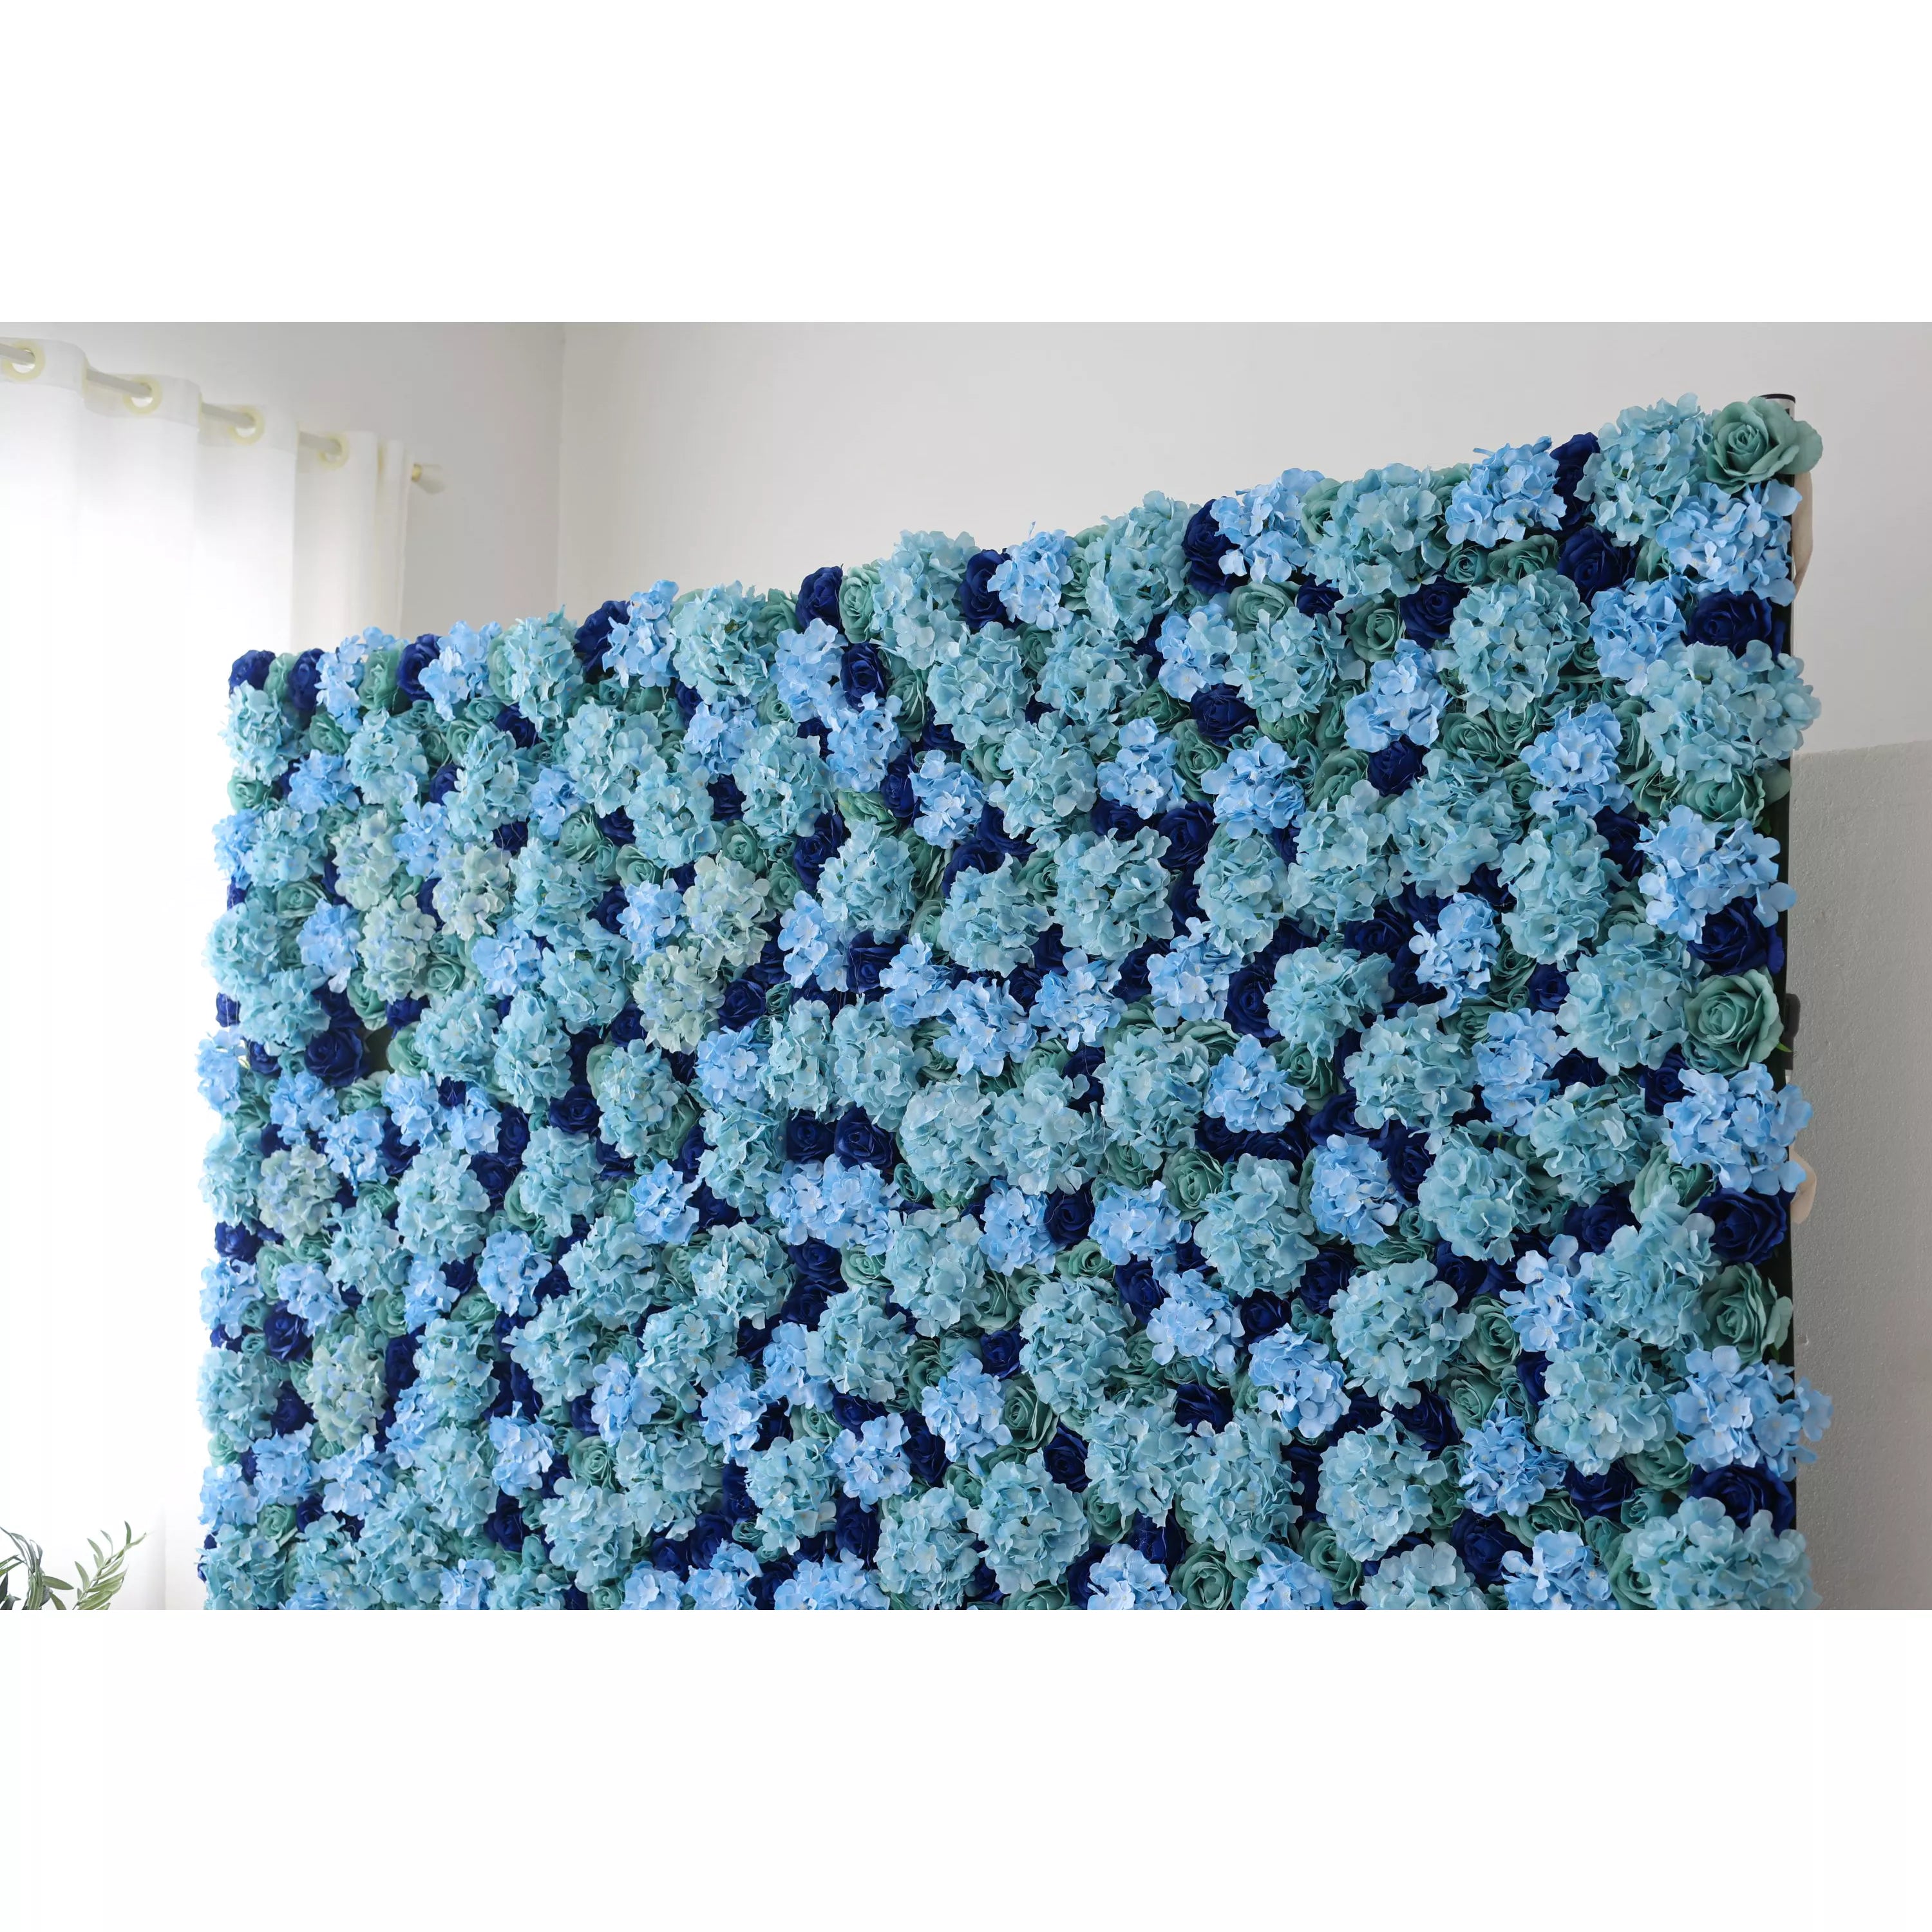 زهور فالار تقدم: أزهار أزور-مجموعة آسرة من الفيروز والزهور الزرقاء العميقة-الجدار المثالي للمواضيع المحيطية ، الأحداث البحرية والداخلية الهادئة